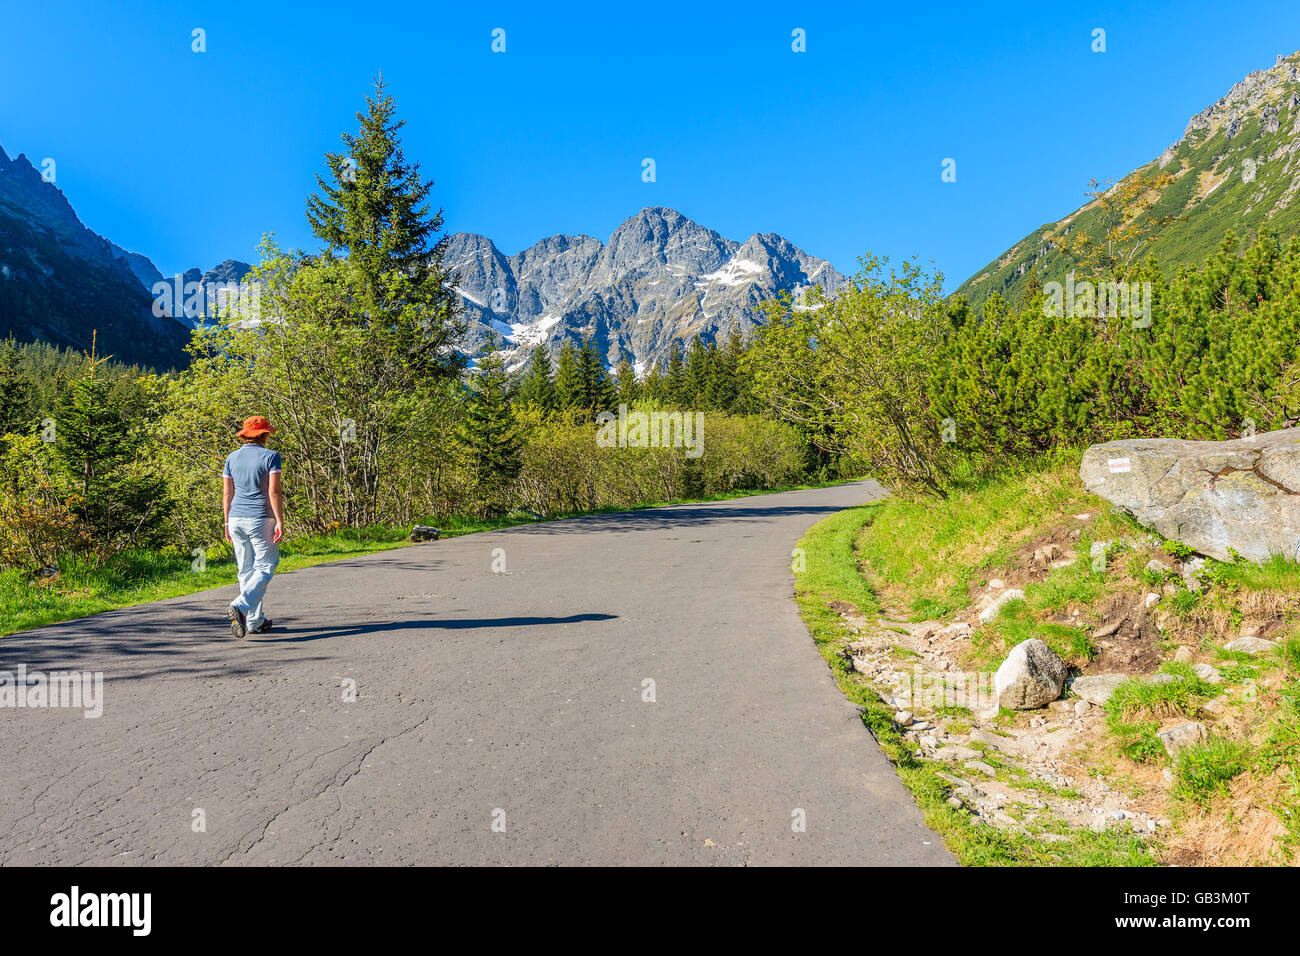 Young tourist walking on road to Morskie Oko lake in Tatra Mountains, Poland Stock Photo